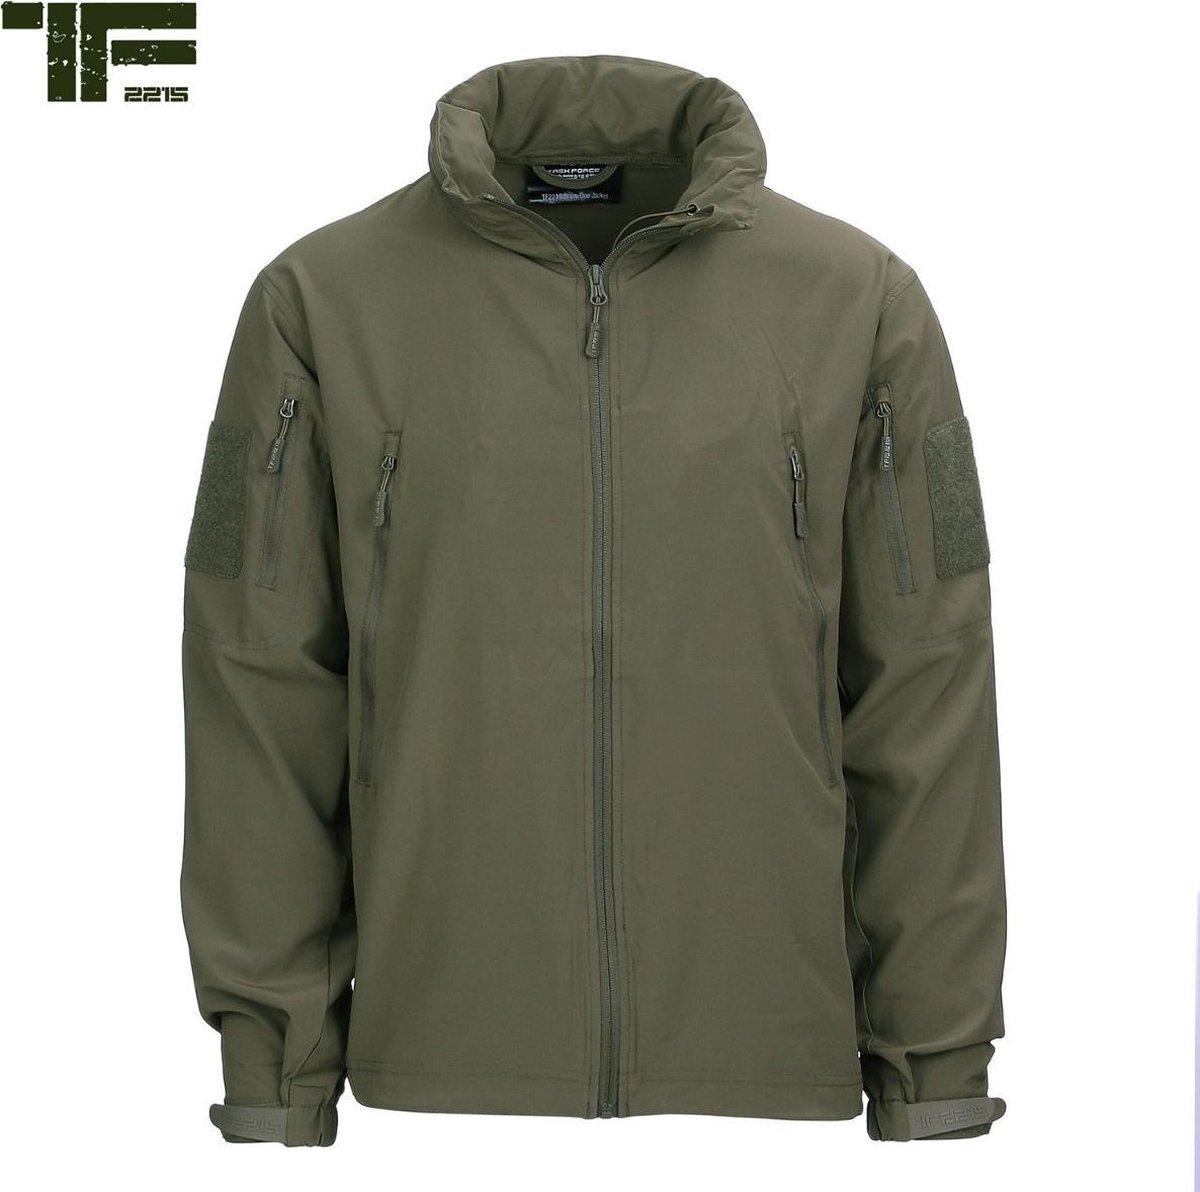 TF-2215 - TF-2215 Bravo One jacket (kleur: Ranger Groen / maat: M)